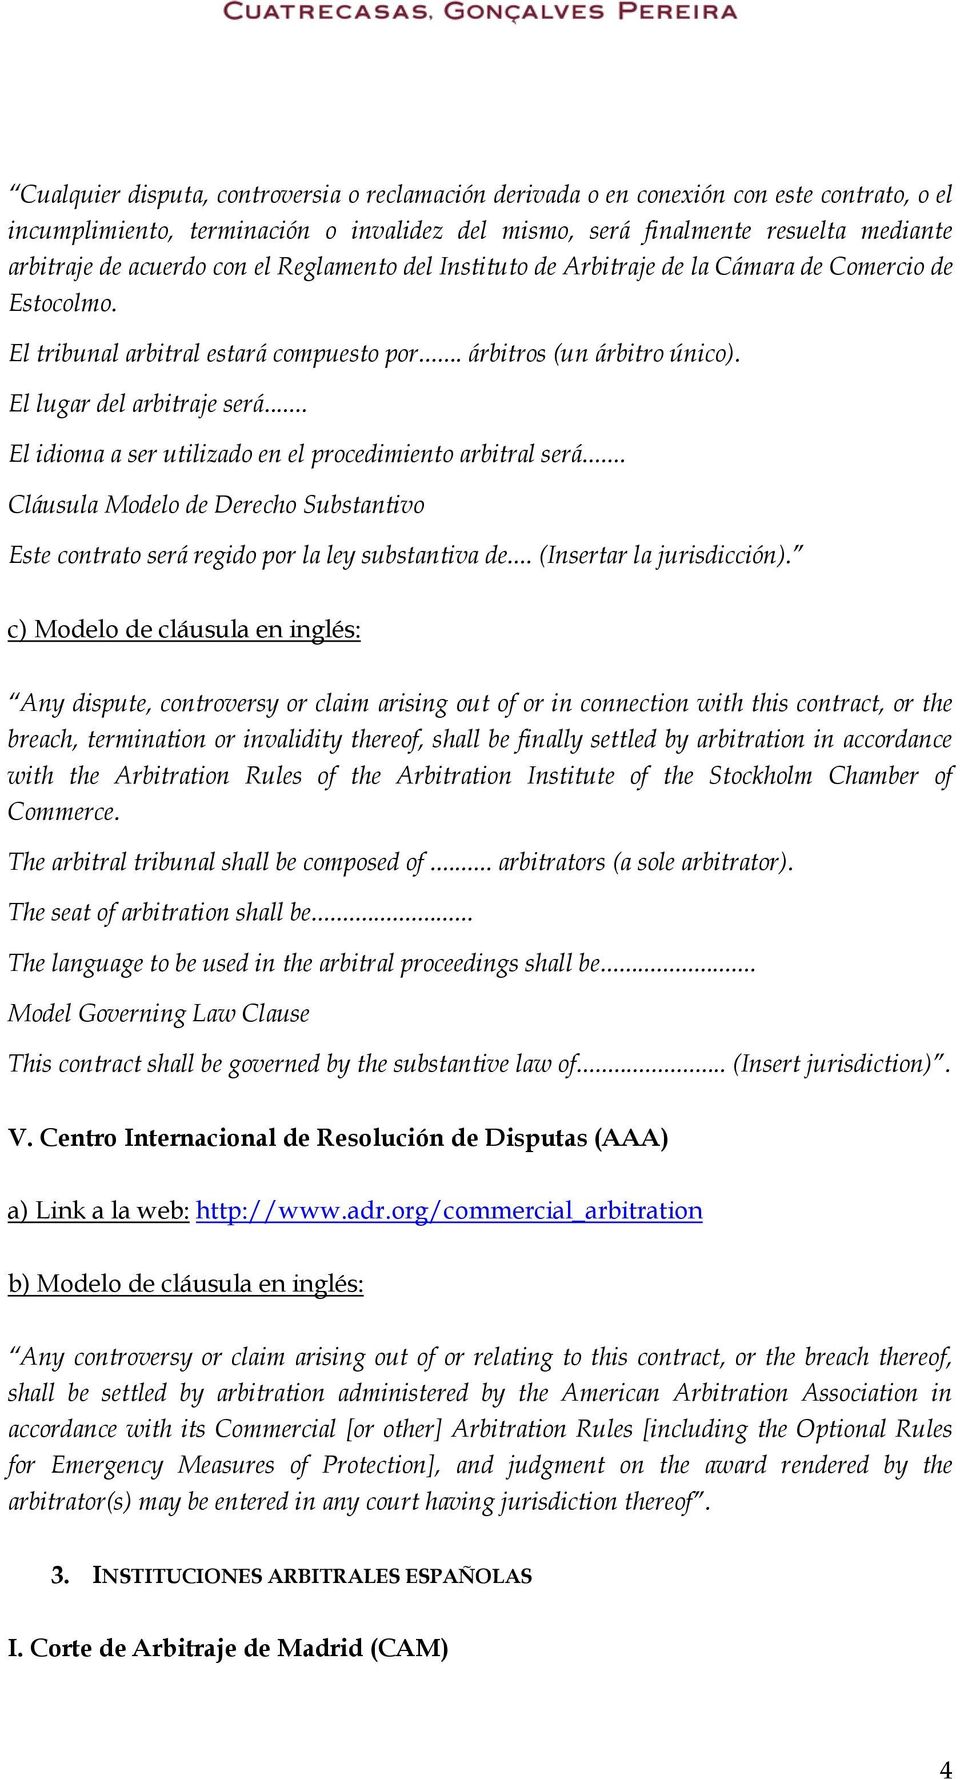 .. El idioma a ser utilizado en el procedimiento arbitral será... Cláusula Modelo de Derecho Substantivo Este contrato será regido por la ley substantiva de... (Insertar la jurisdicción).